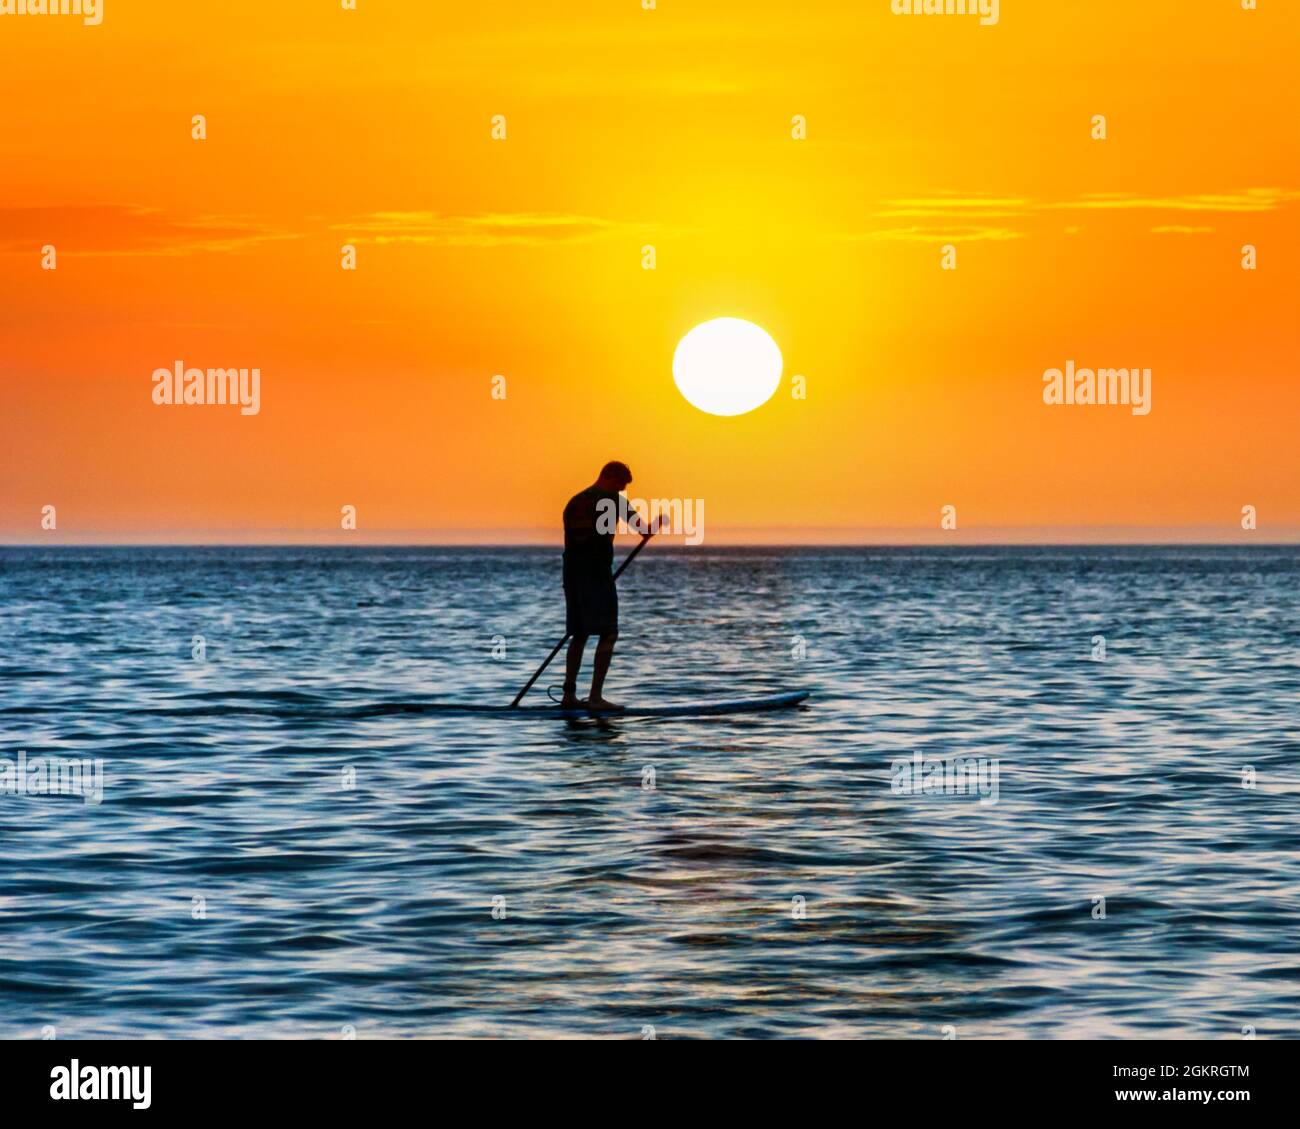 Un uomo si affaccia sul mare su una tavola da paddleboard in piedi, costeggiato dal sole che tramonta, Westward ho!, Devon, Regno Unito Foto Stock